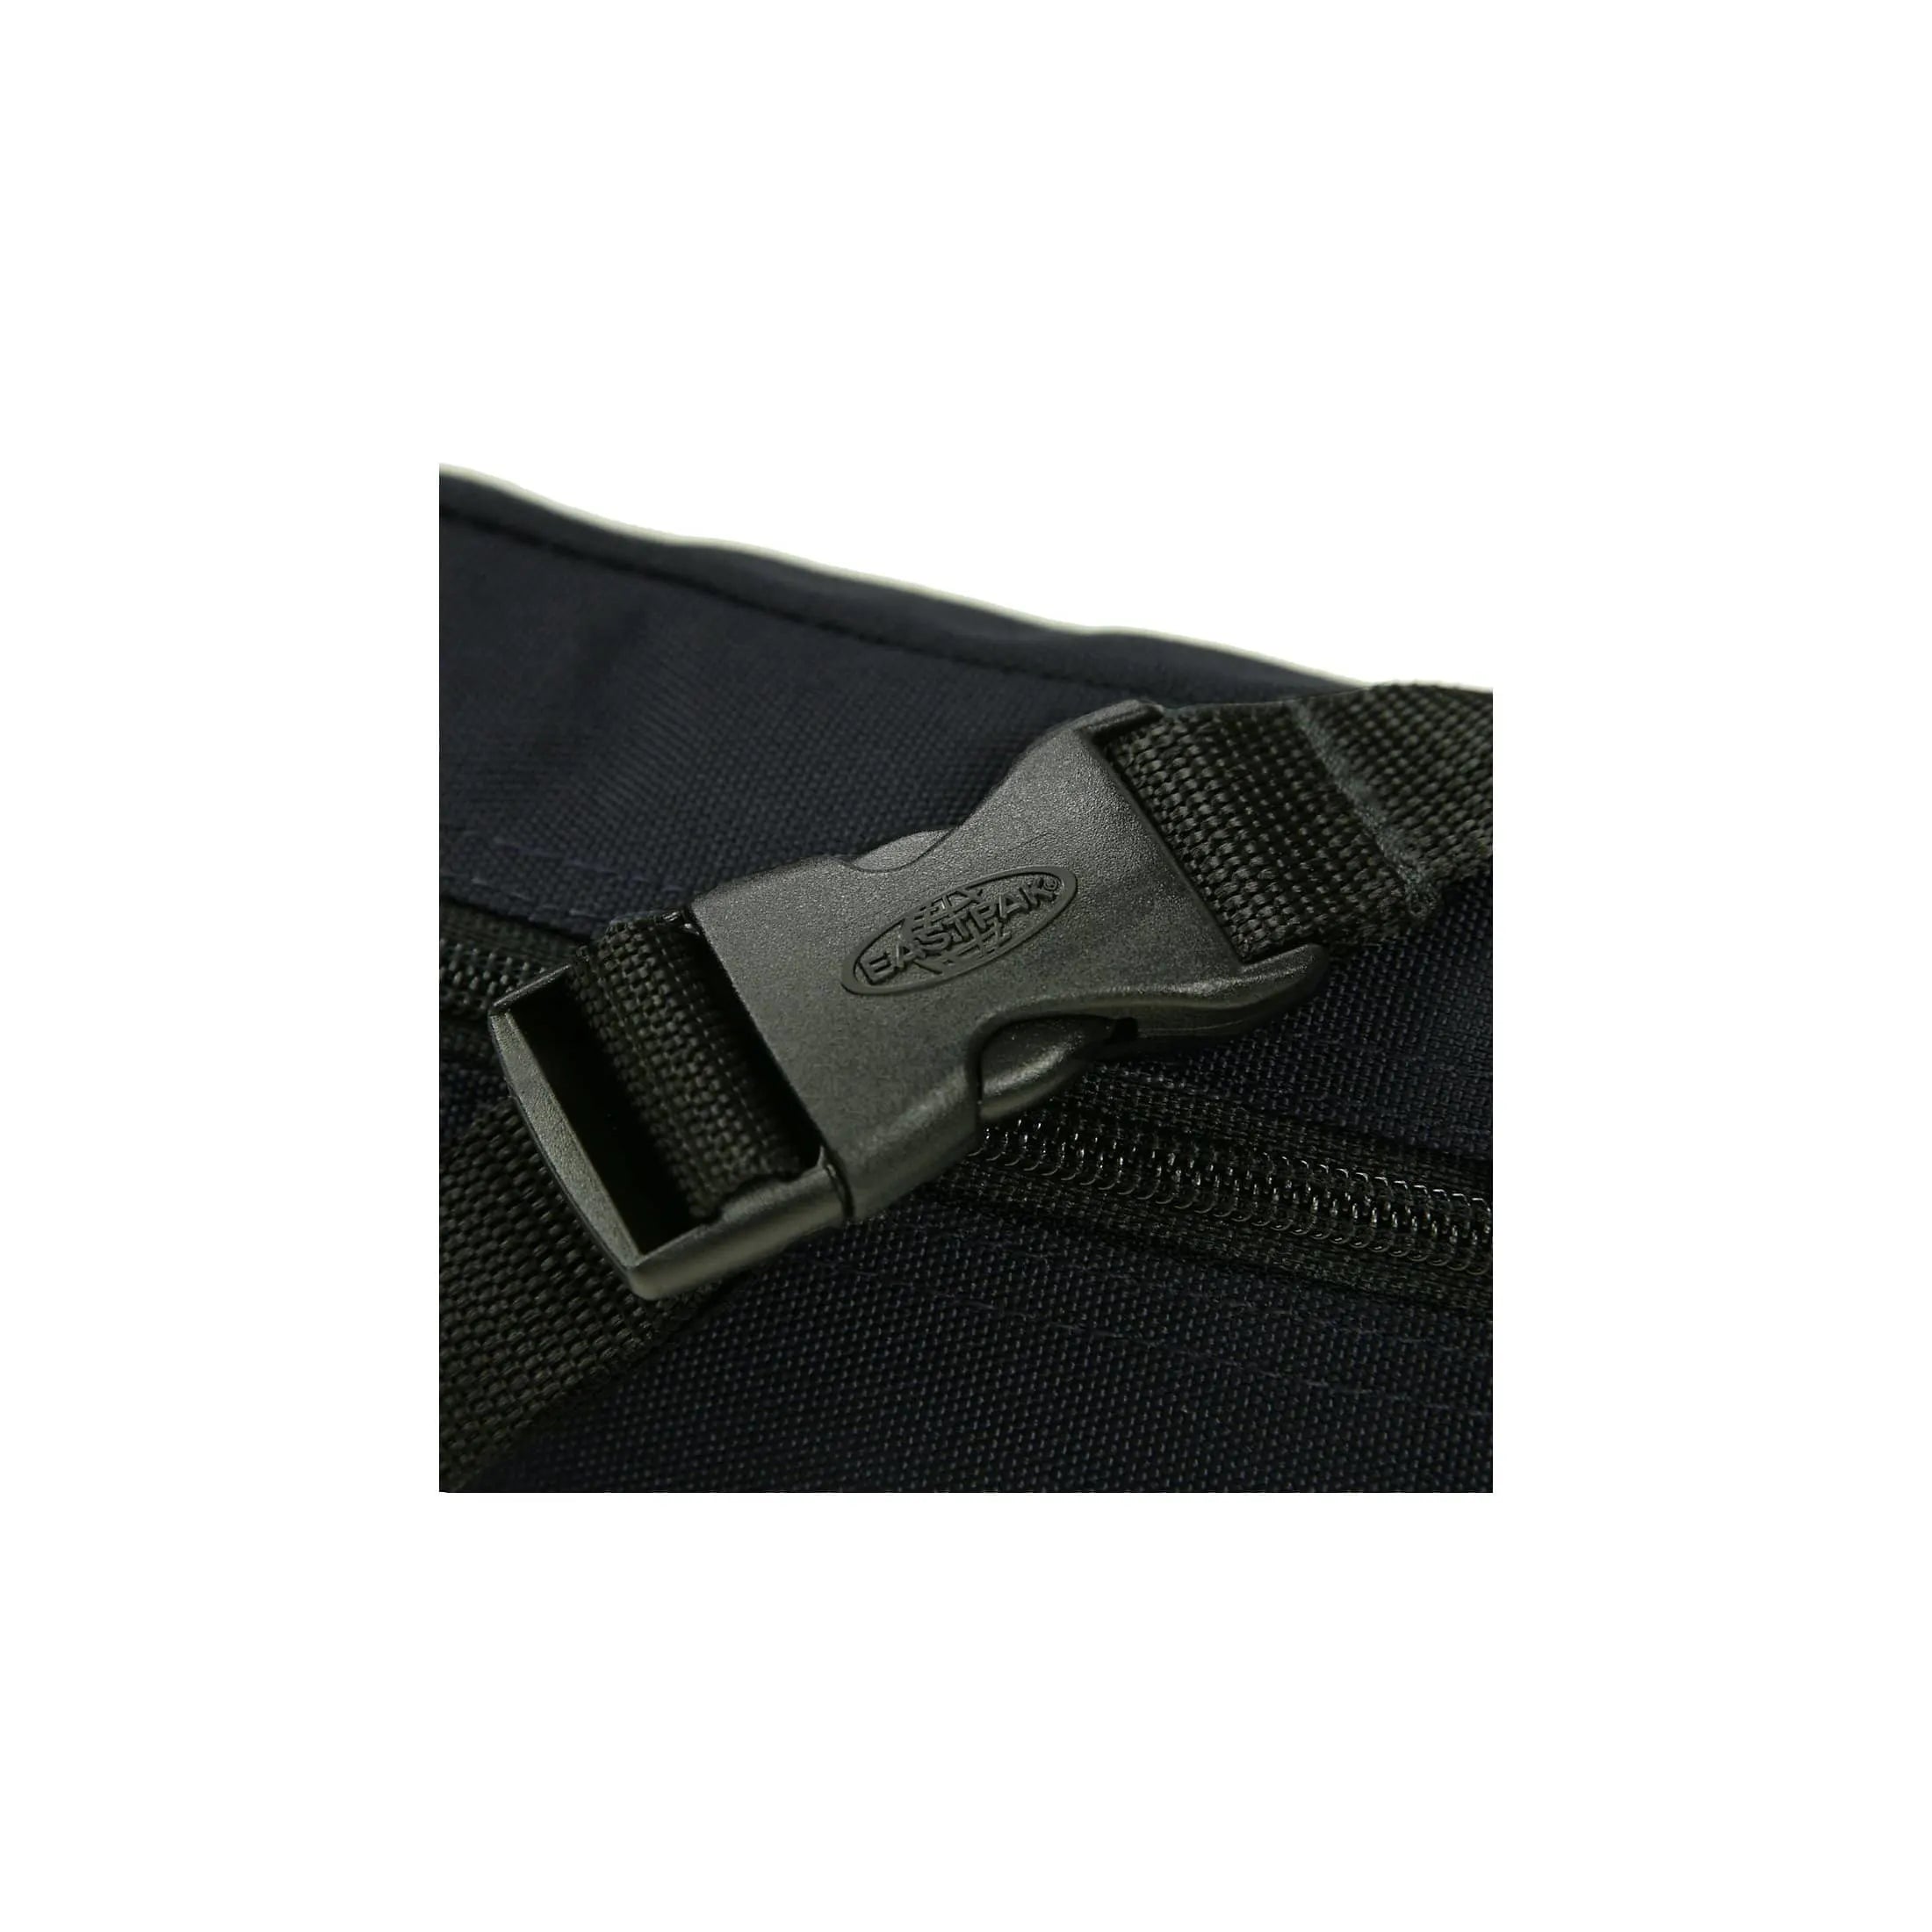 Eastpak Authentic Springer Belt Bag 23 cm - Bold Branded